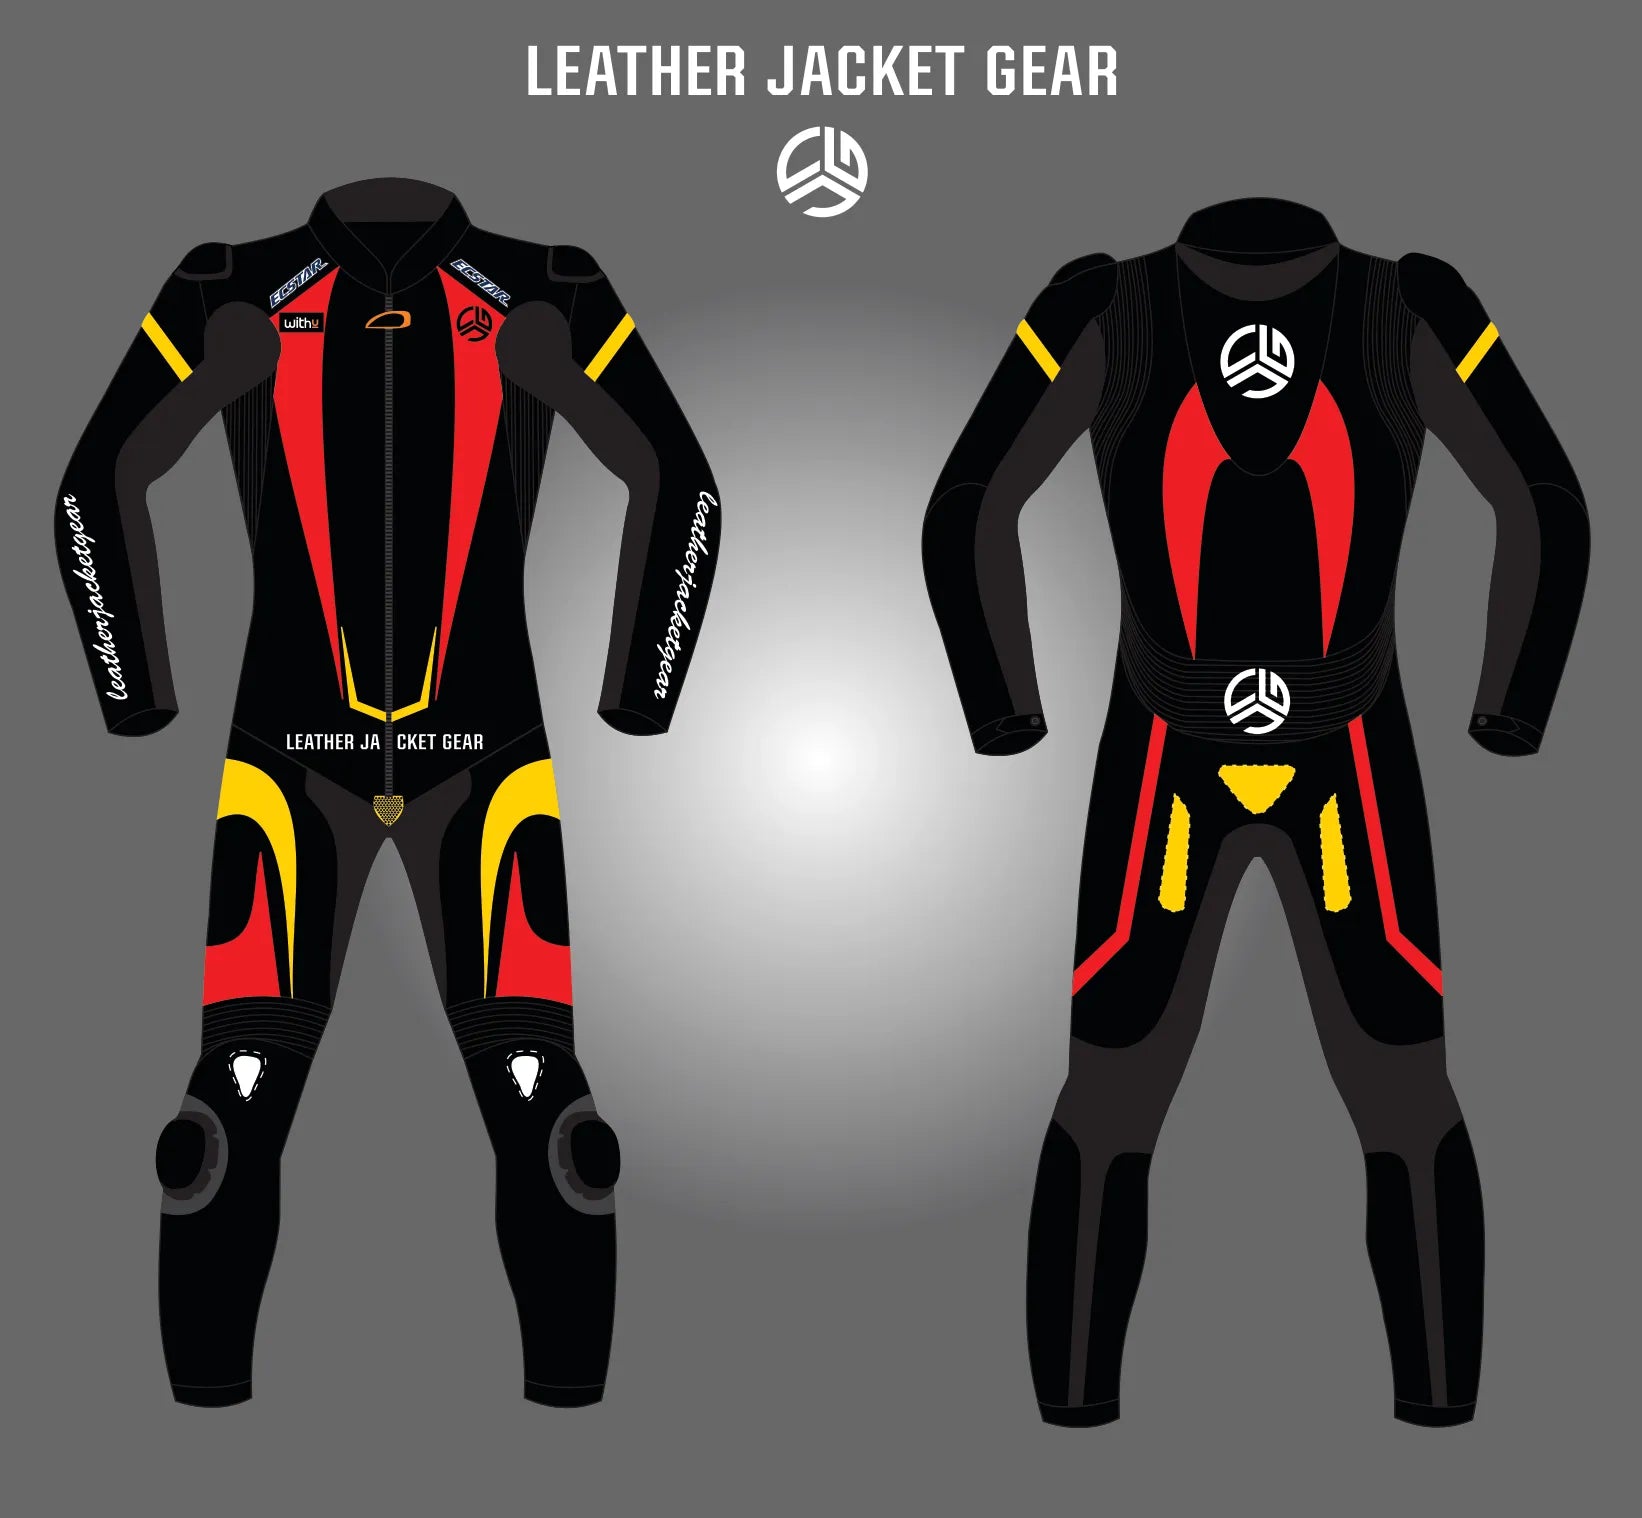 LeatherJacketGear-Black-Red-Yellow-Race-Suit